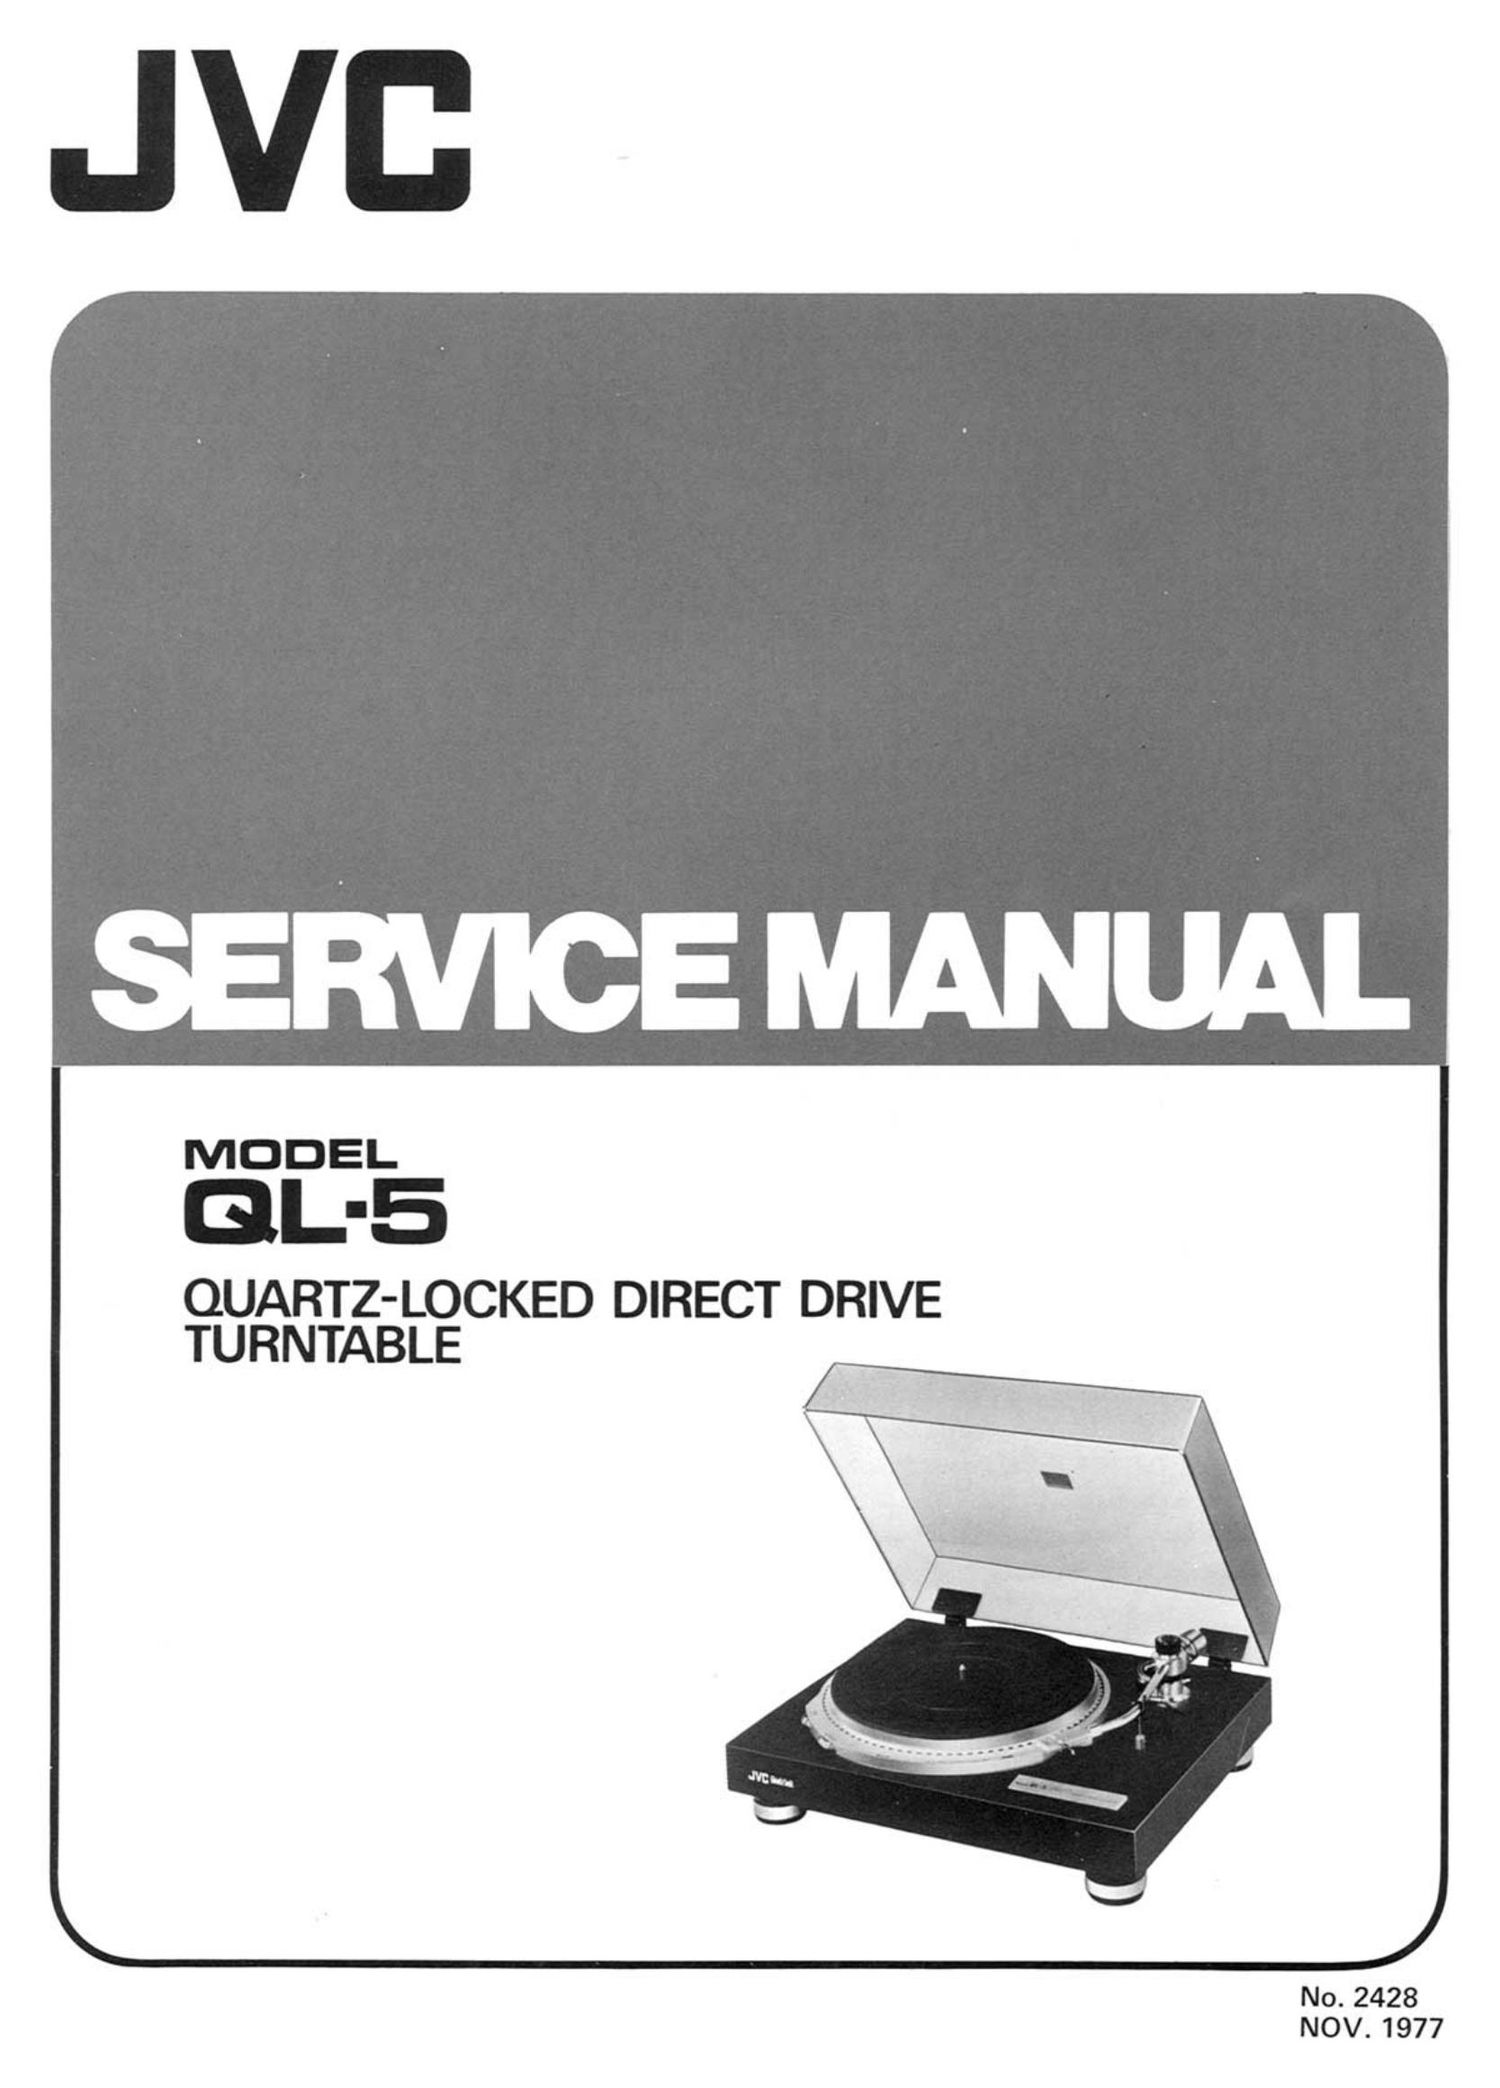 Jvc QL 5 Service Manual